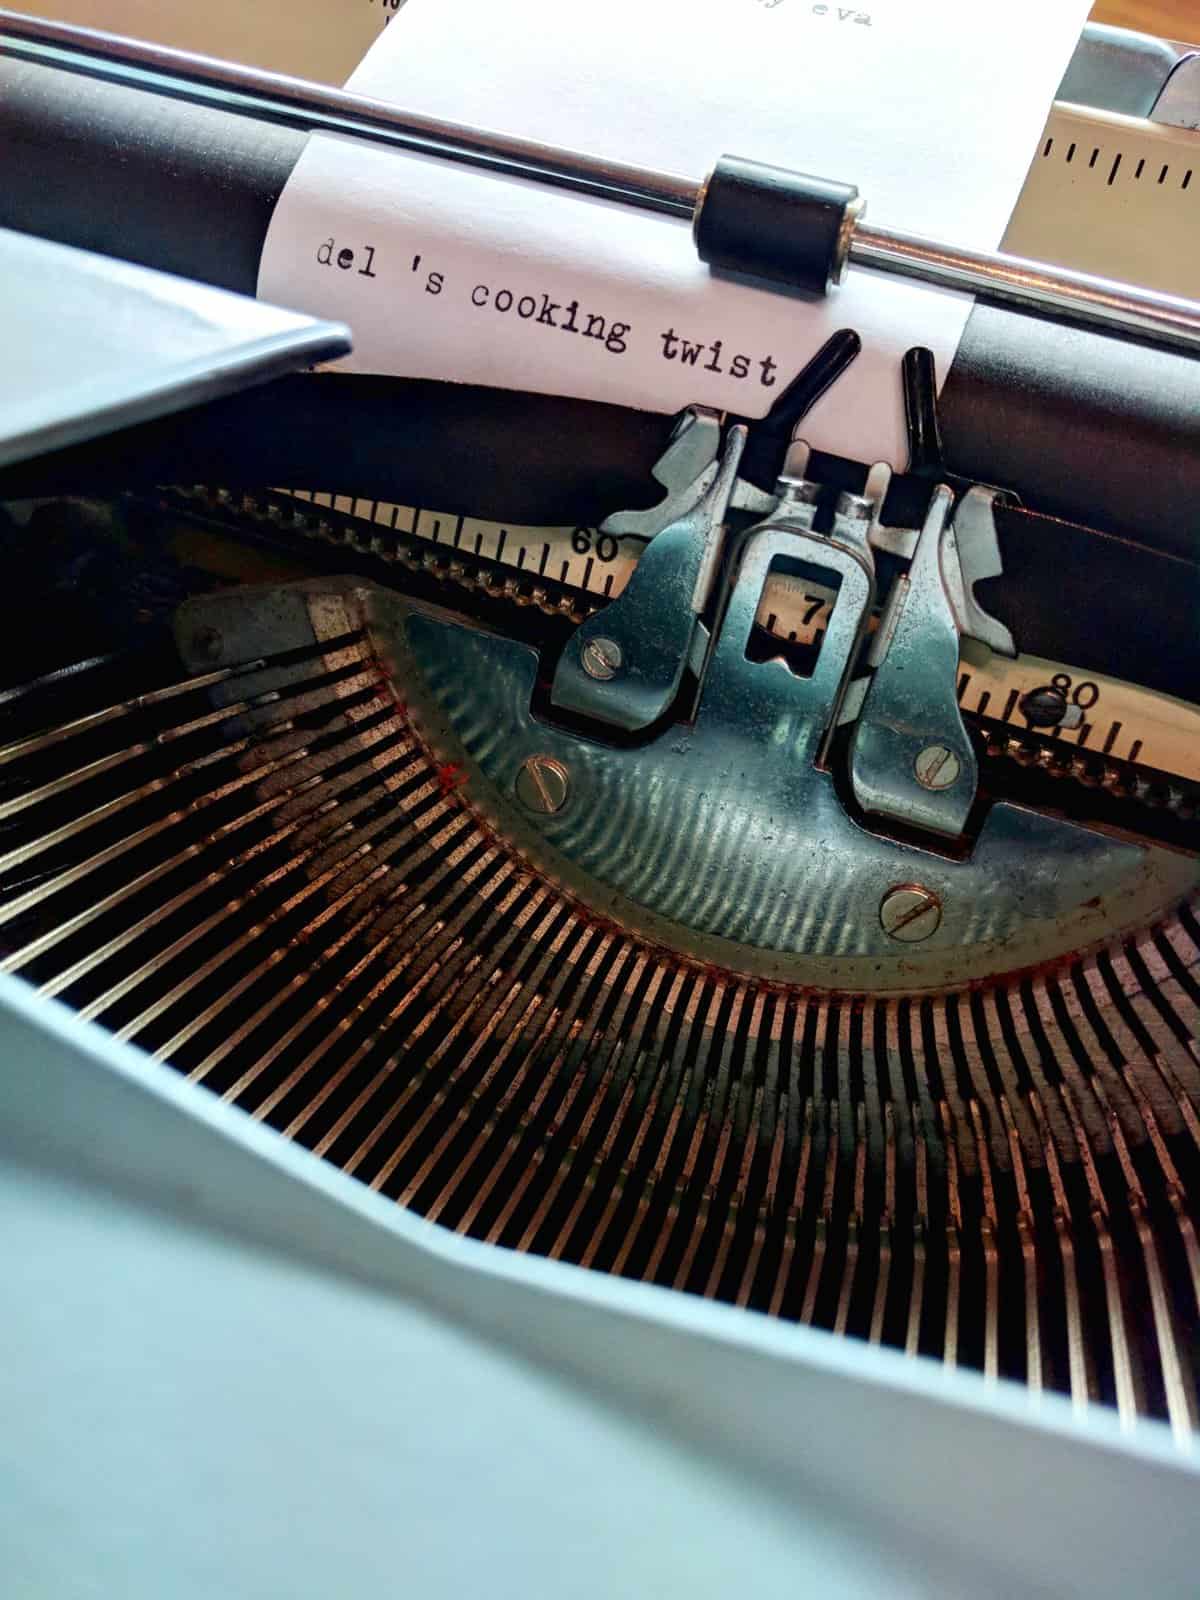 delscookingtwist_typewriter_logo